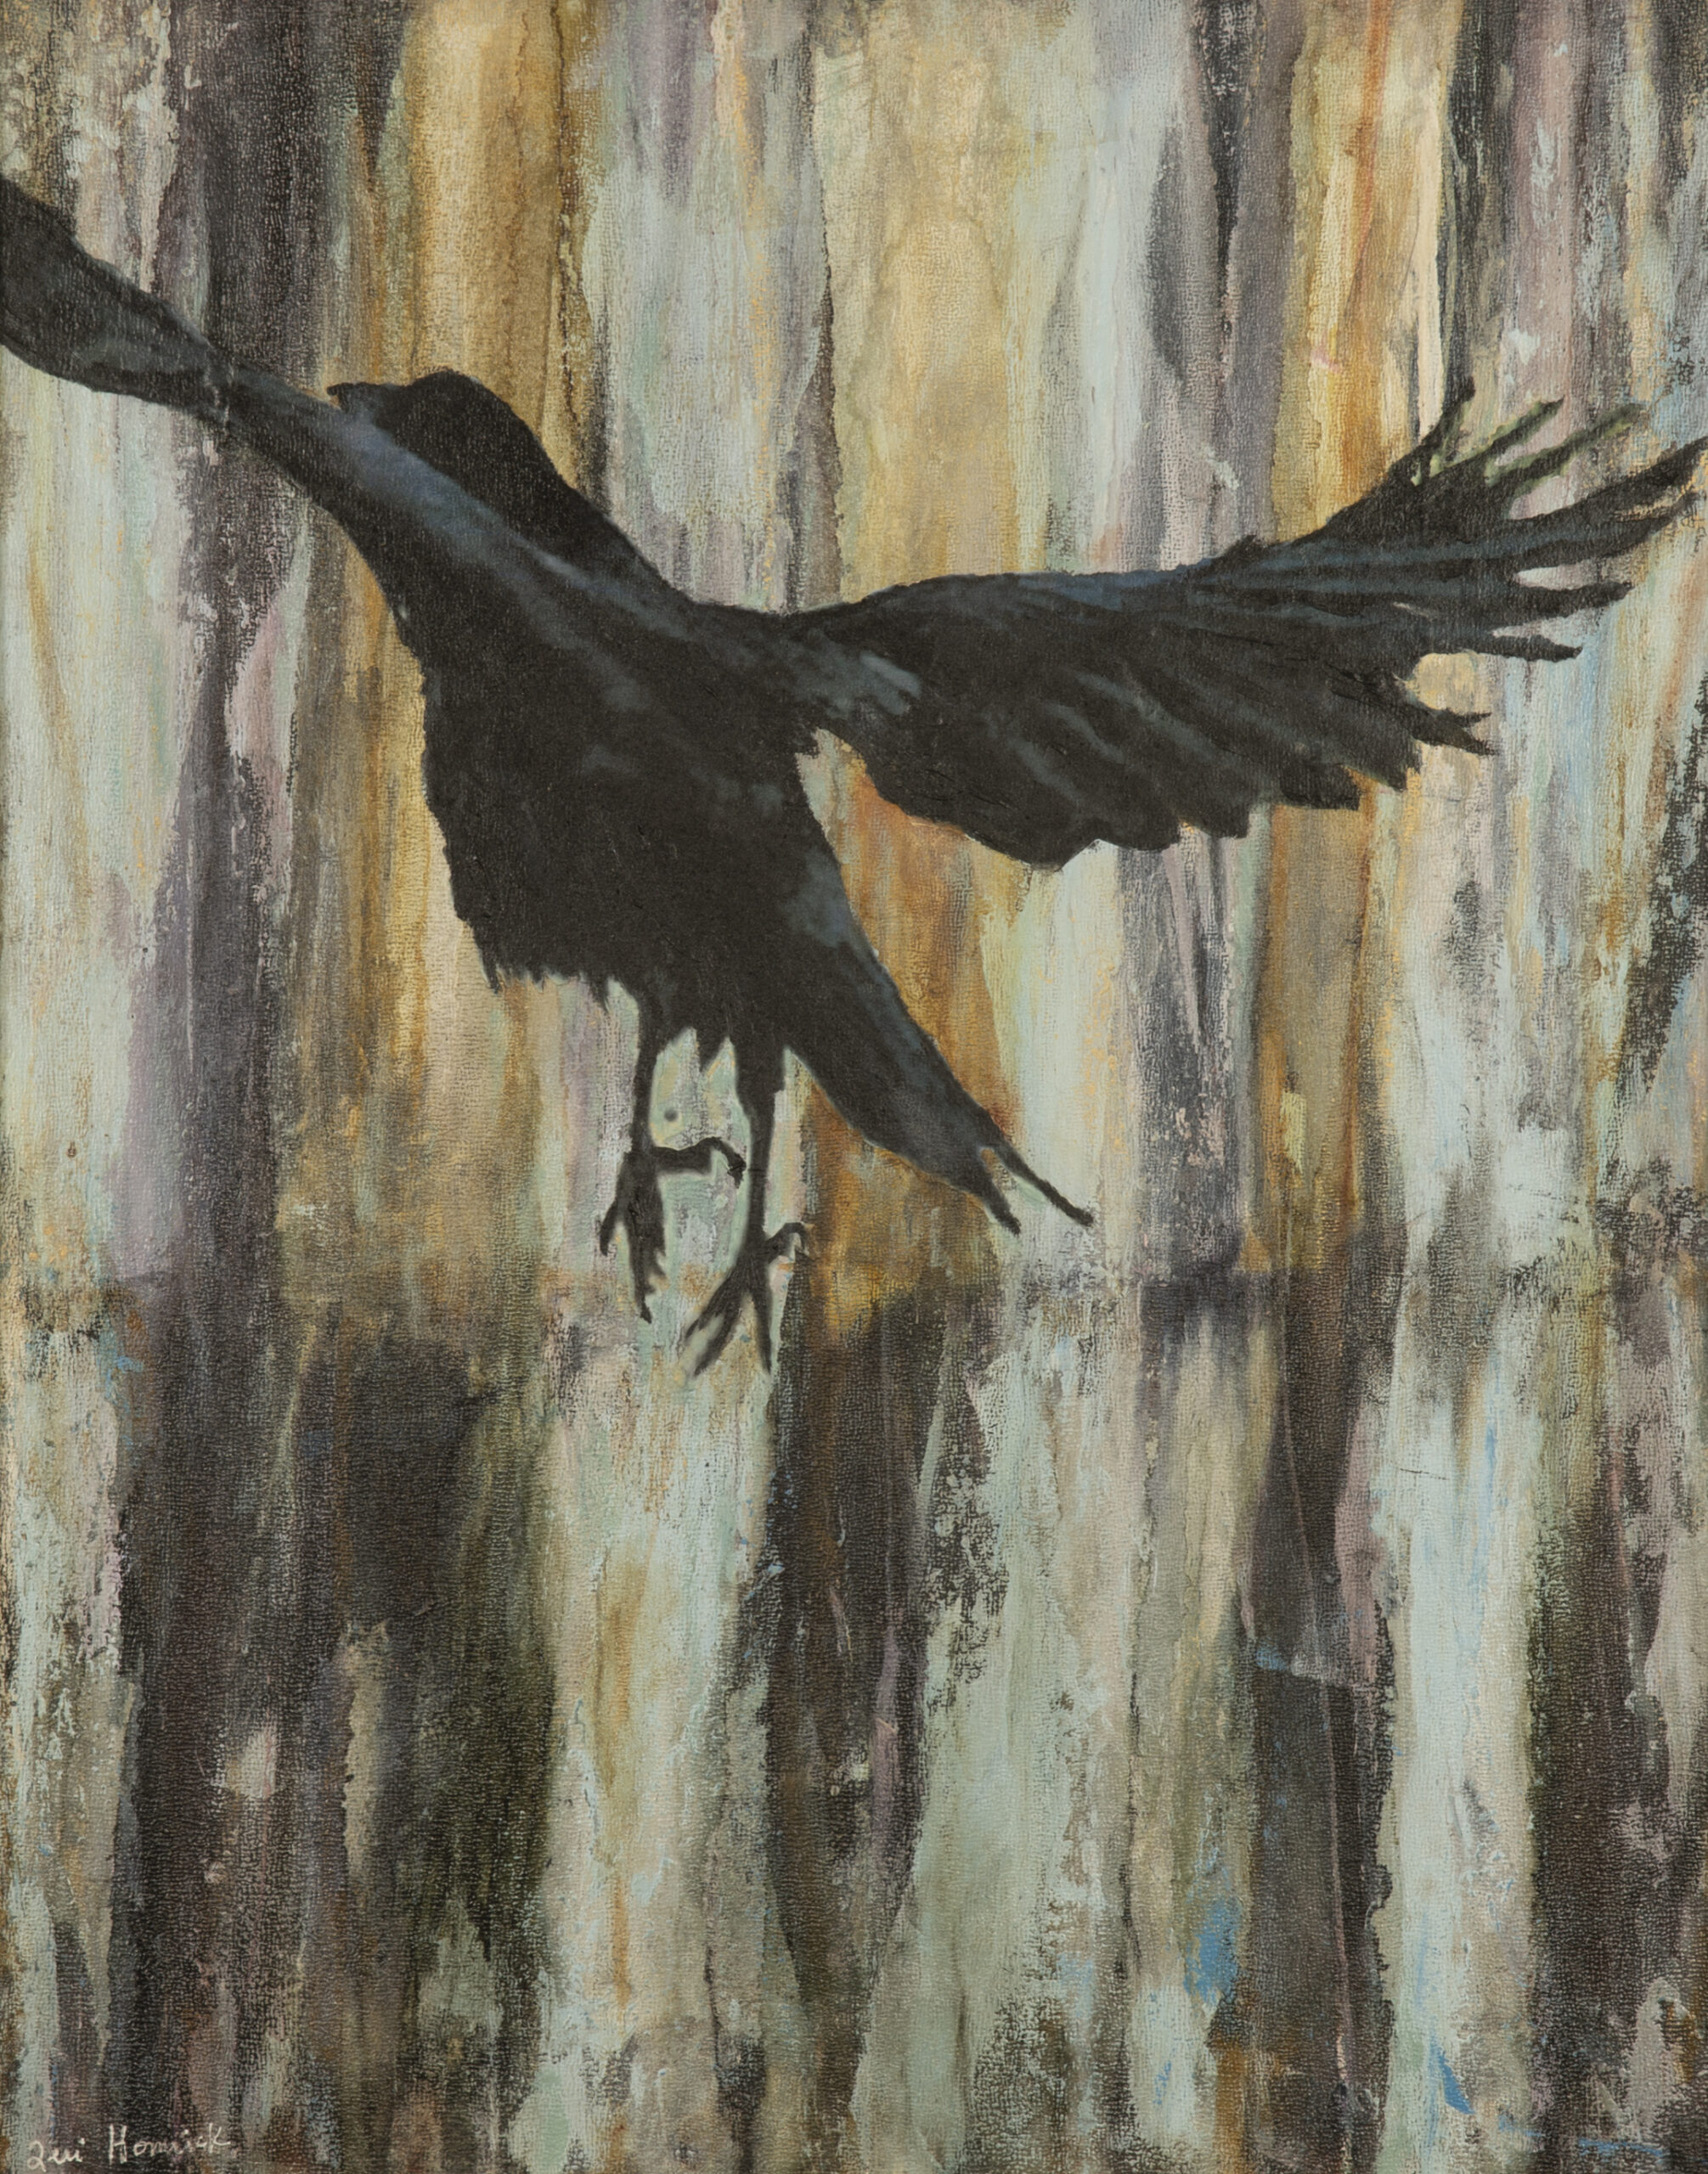 Calling Crows No. 13